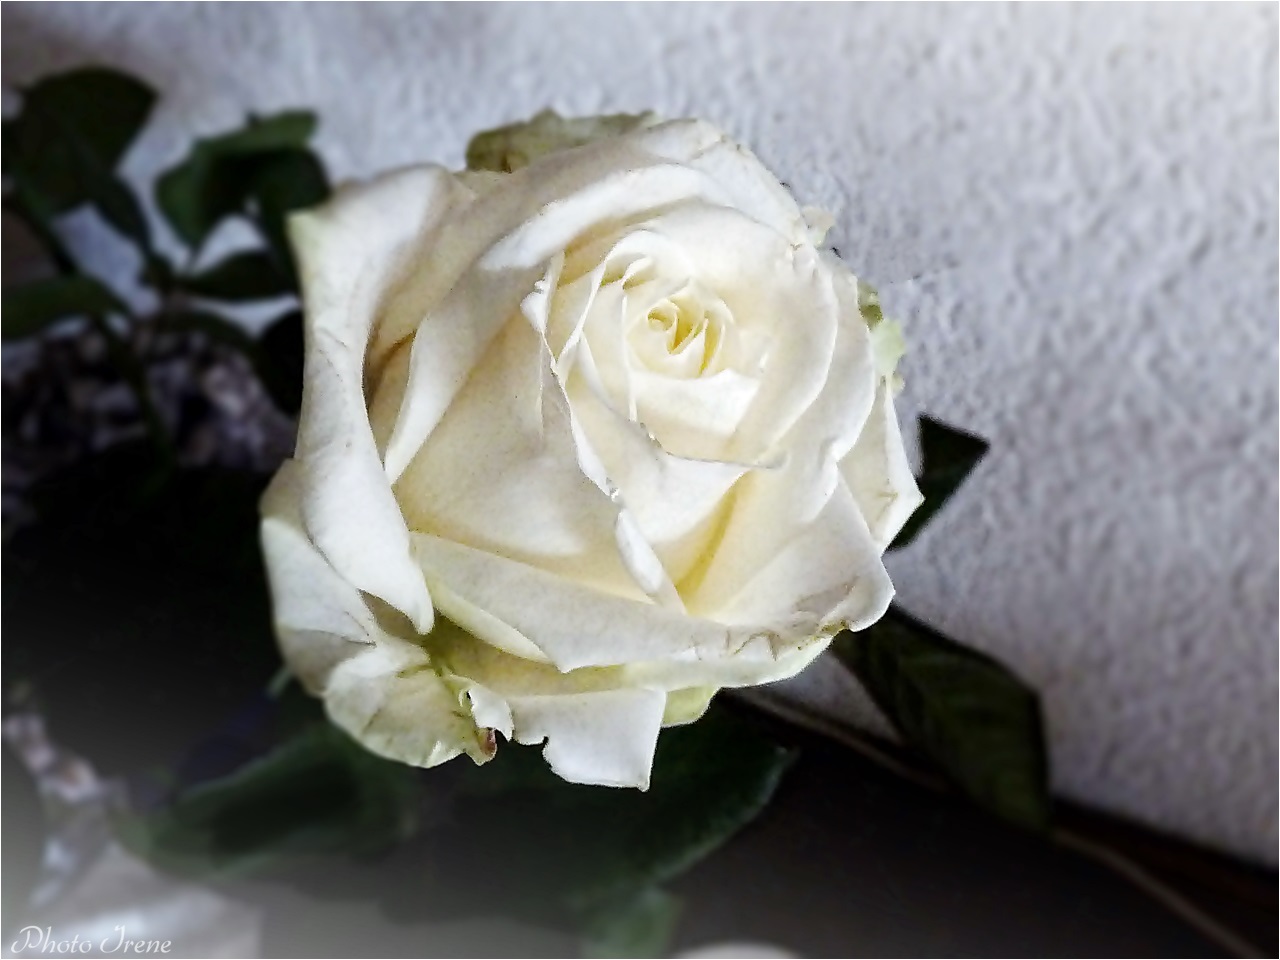 weiße Rosen 